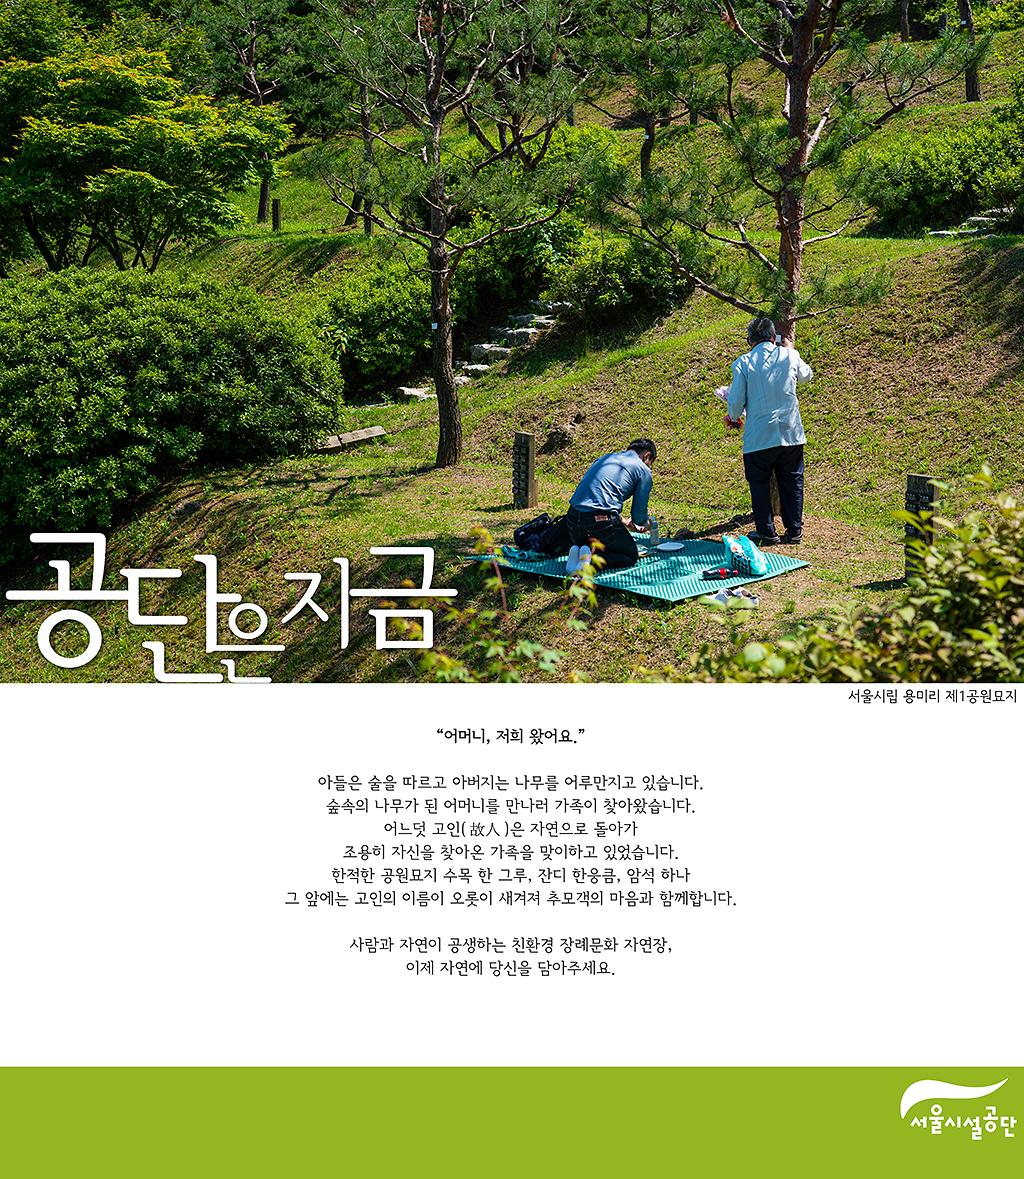 [공단은 지금] 푸른 바람 불어오는 서울시립 용미1묘지 사진